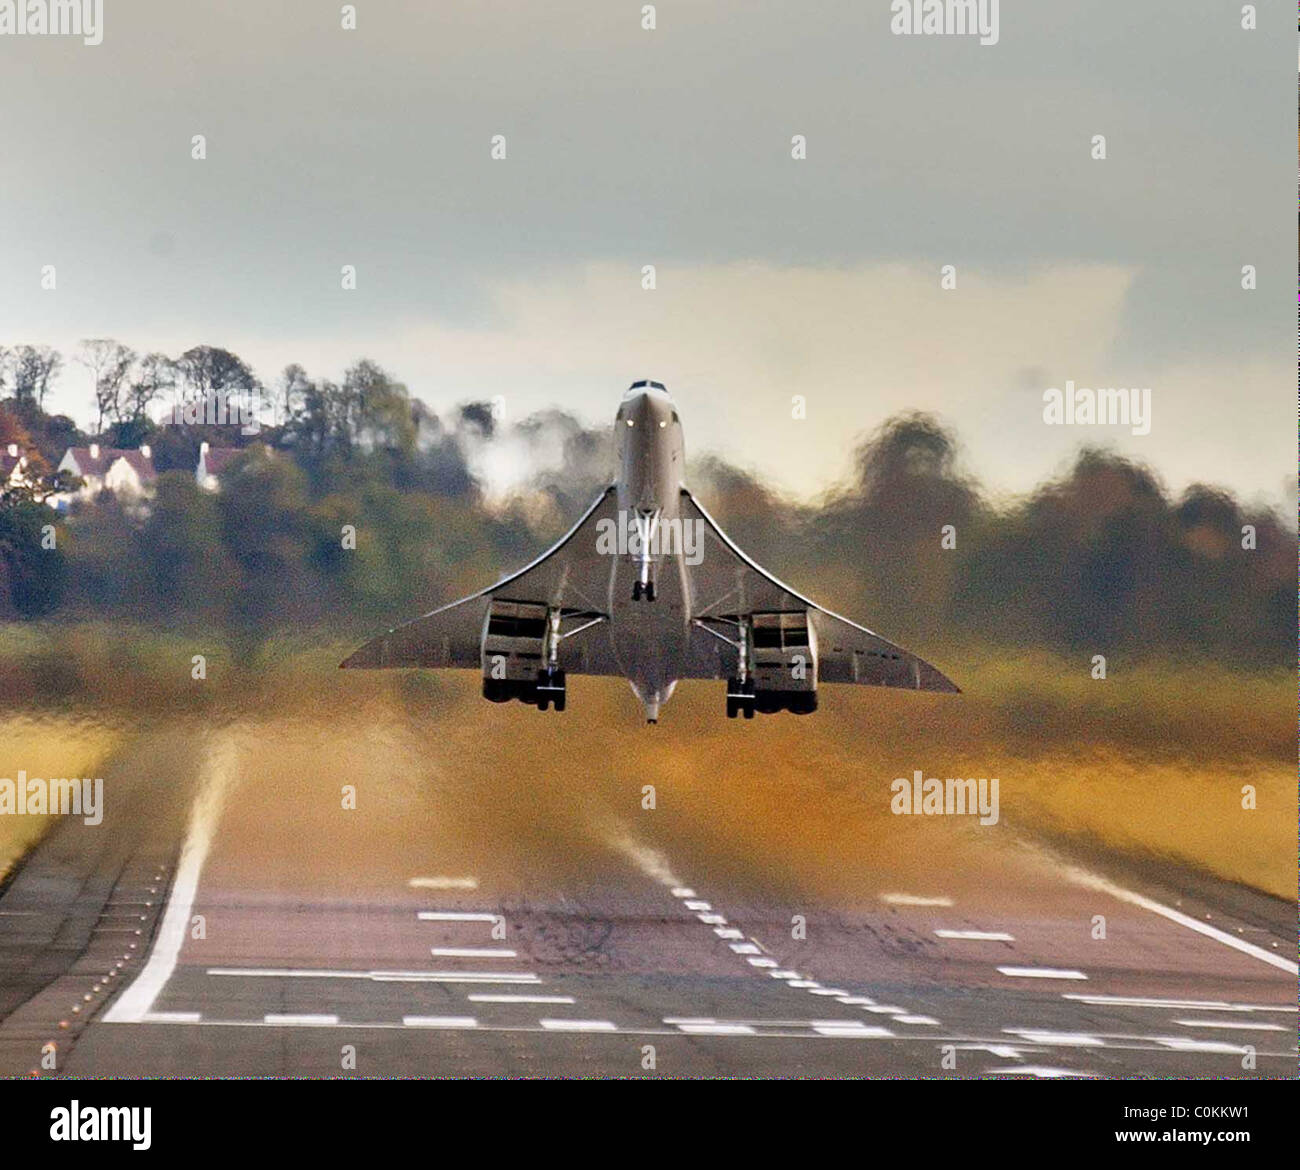 brittish-airways-concorde-taking-off-from-edinburgh-tournhouse-airport-C0KKW1.jpg